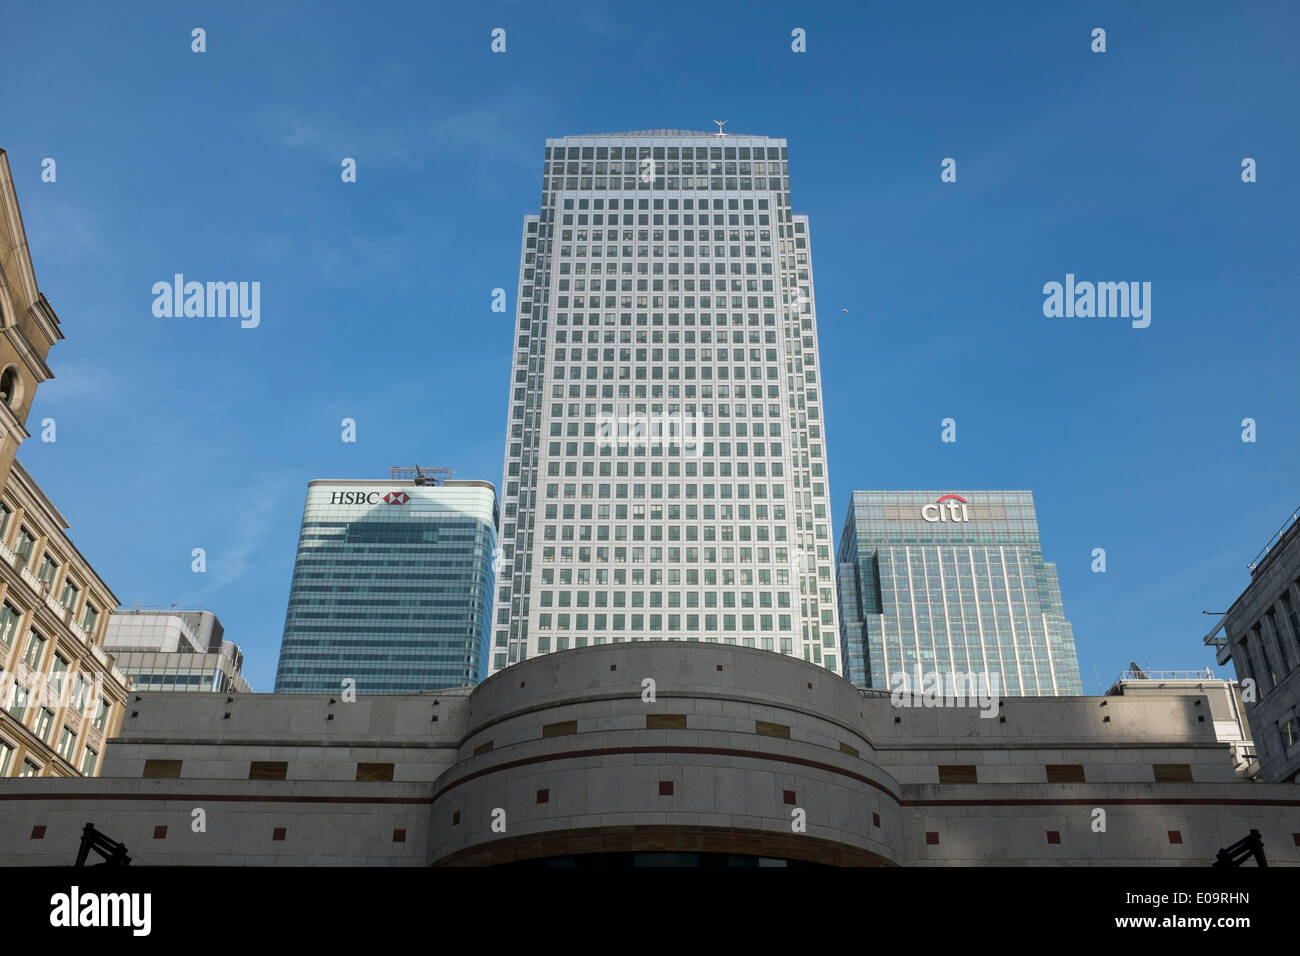 Canary Wharf. Das Bankenviertel. London. HSBC und Citi Bank Kopf Vierteln. Stockfoto